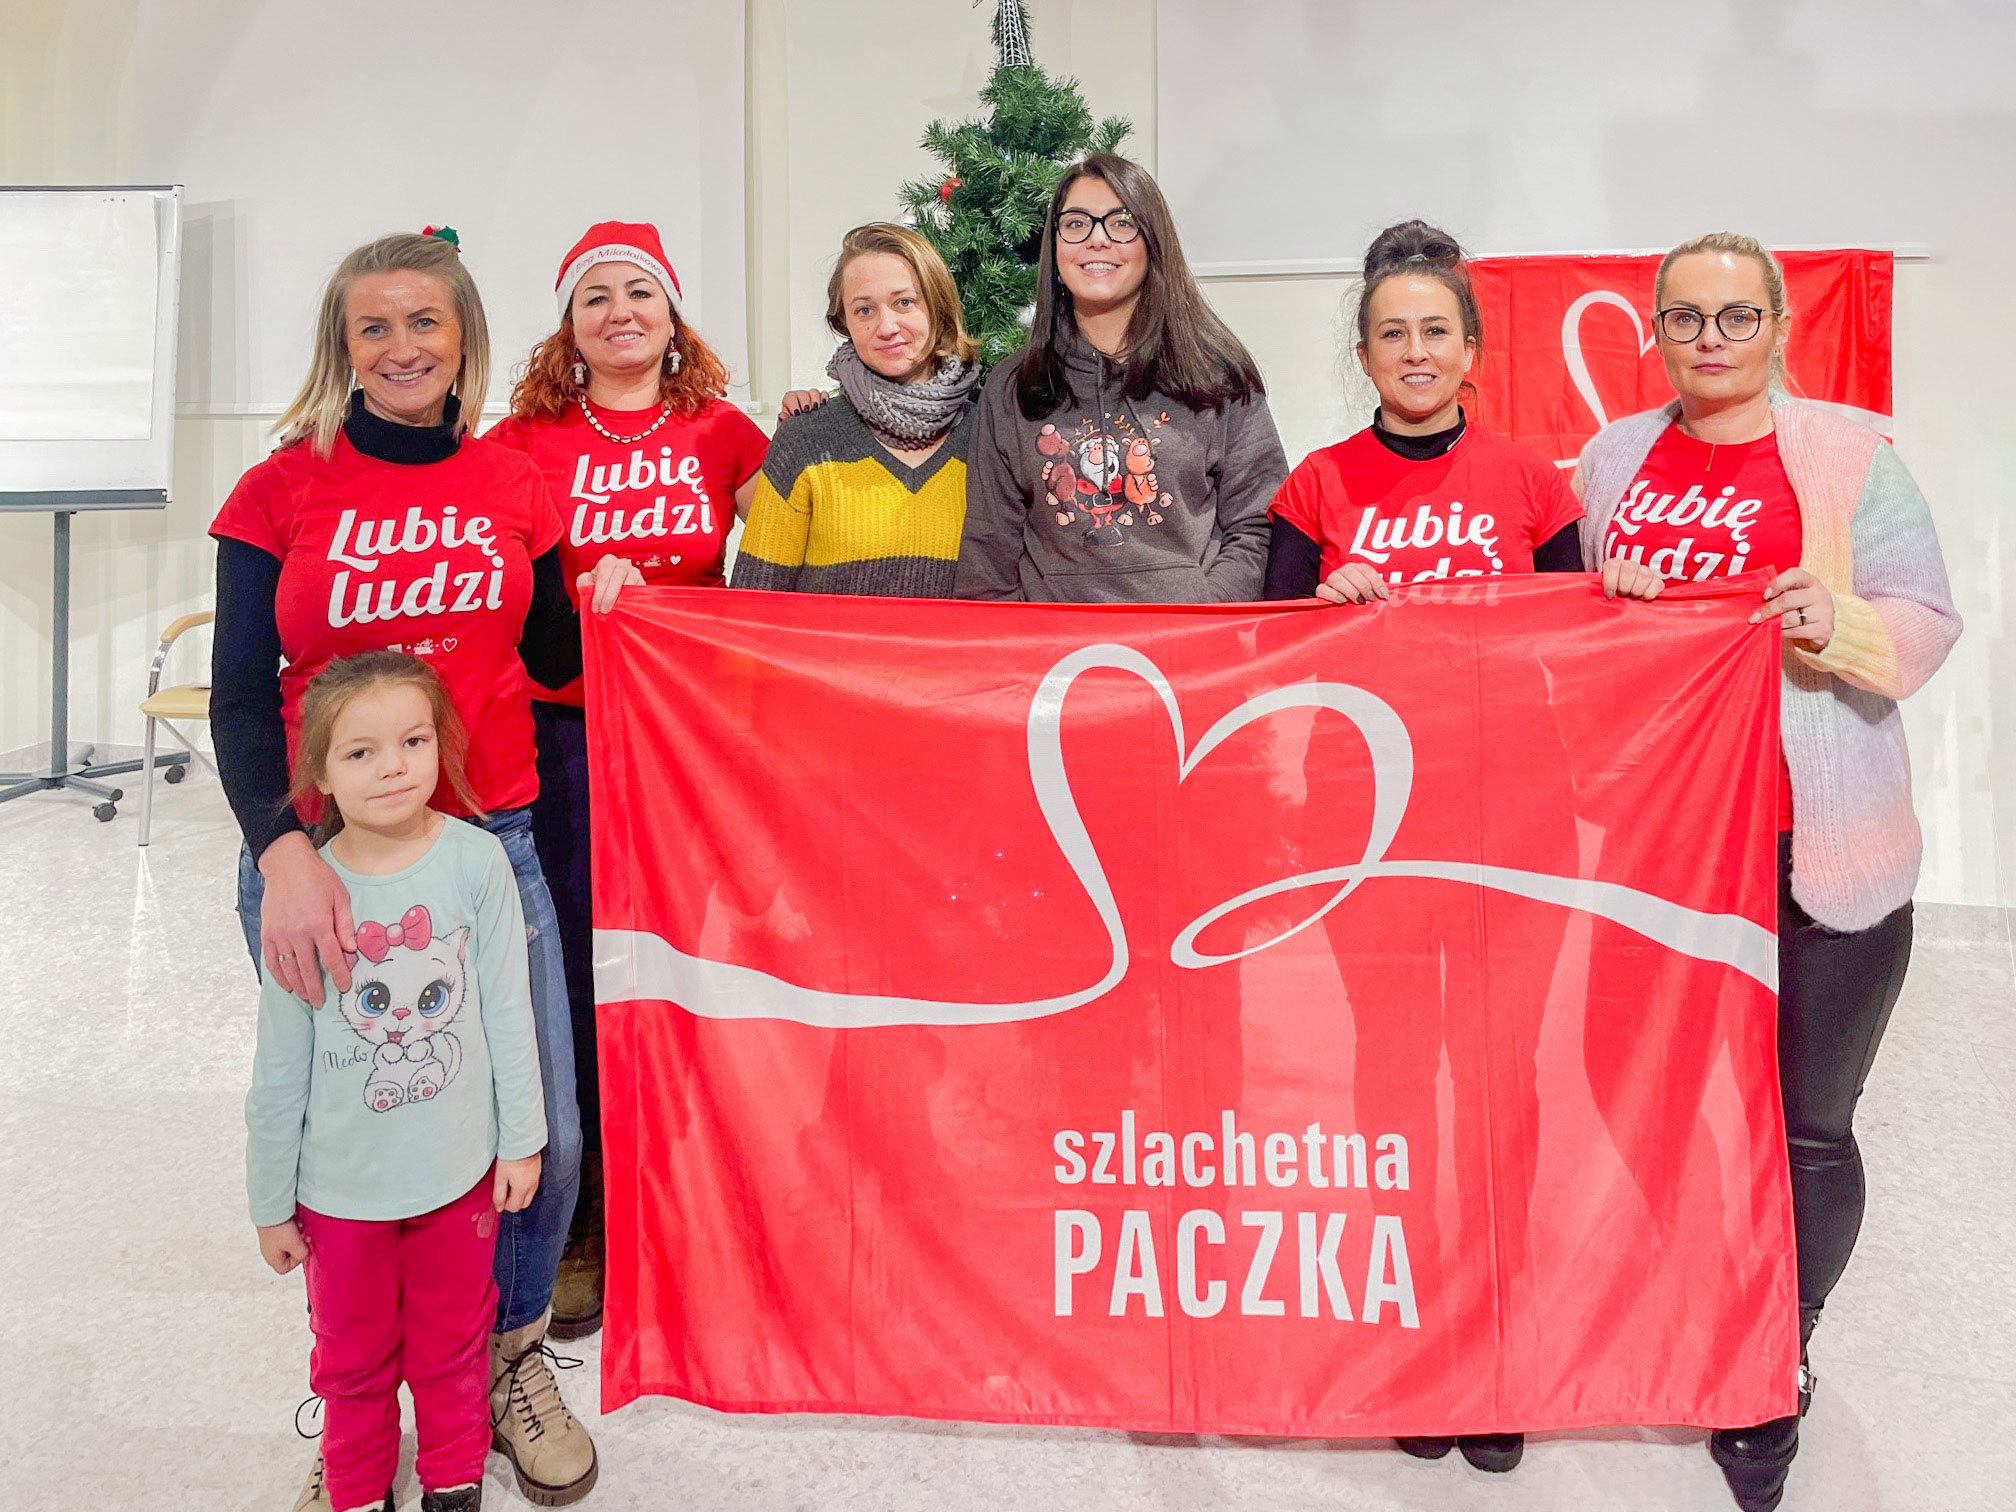 Grupa wolontariuszy w czerwonych koszulkach trzymających baner akcji "Szlachetna Paczka" obok choinki.